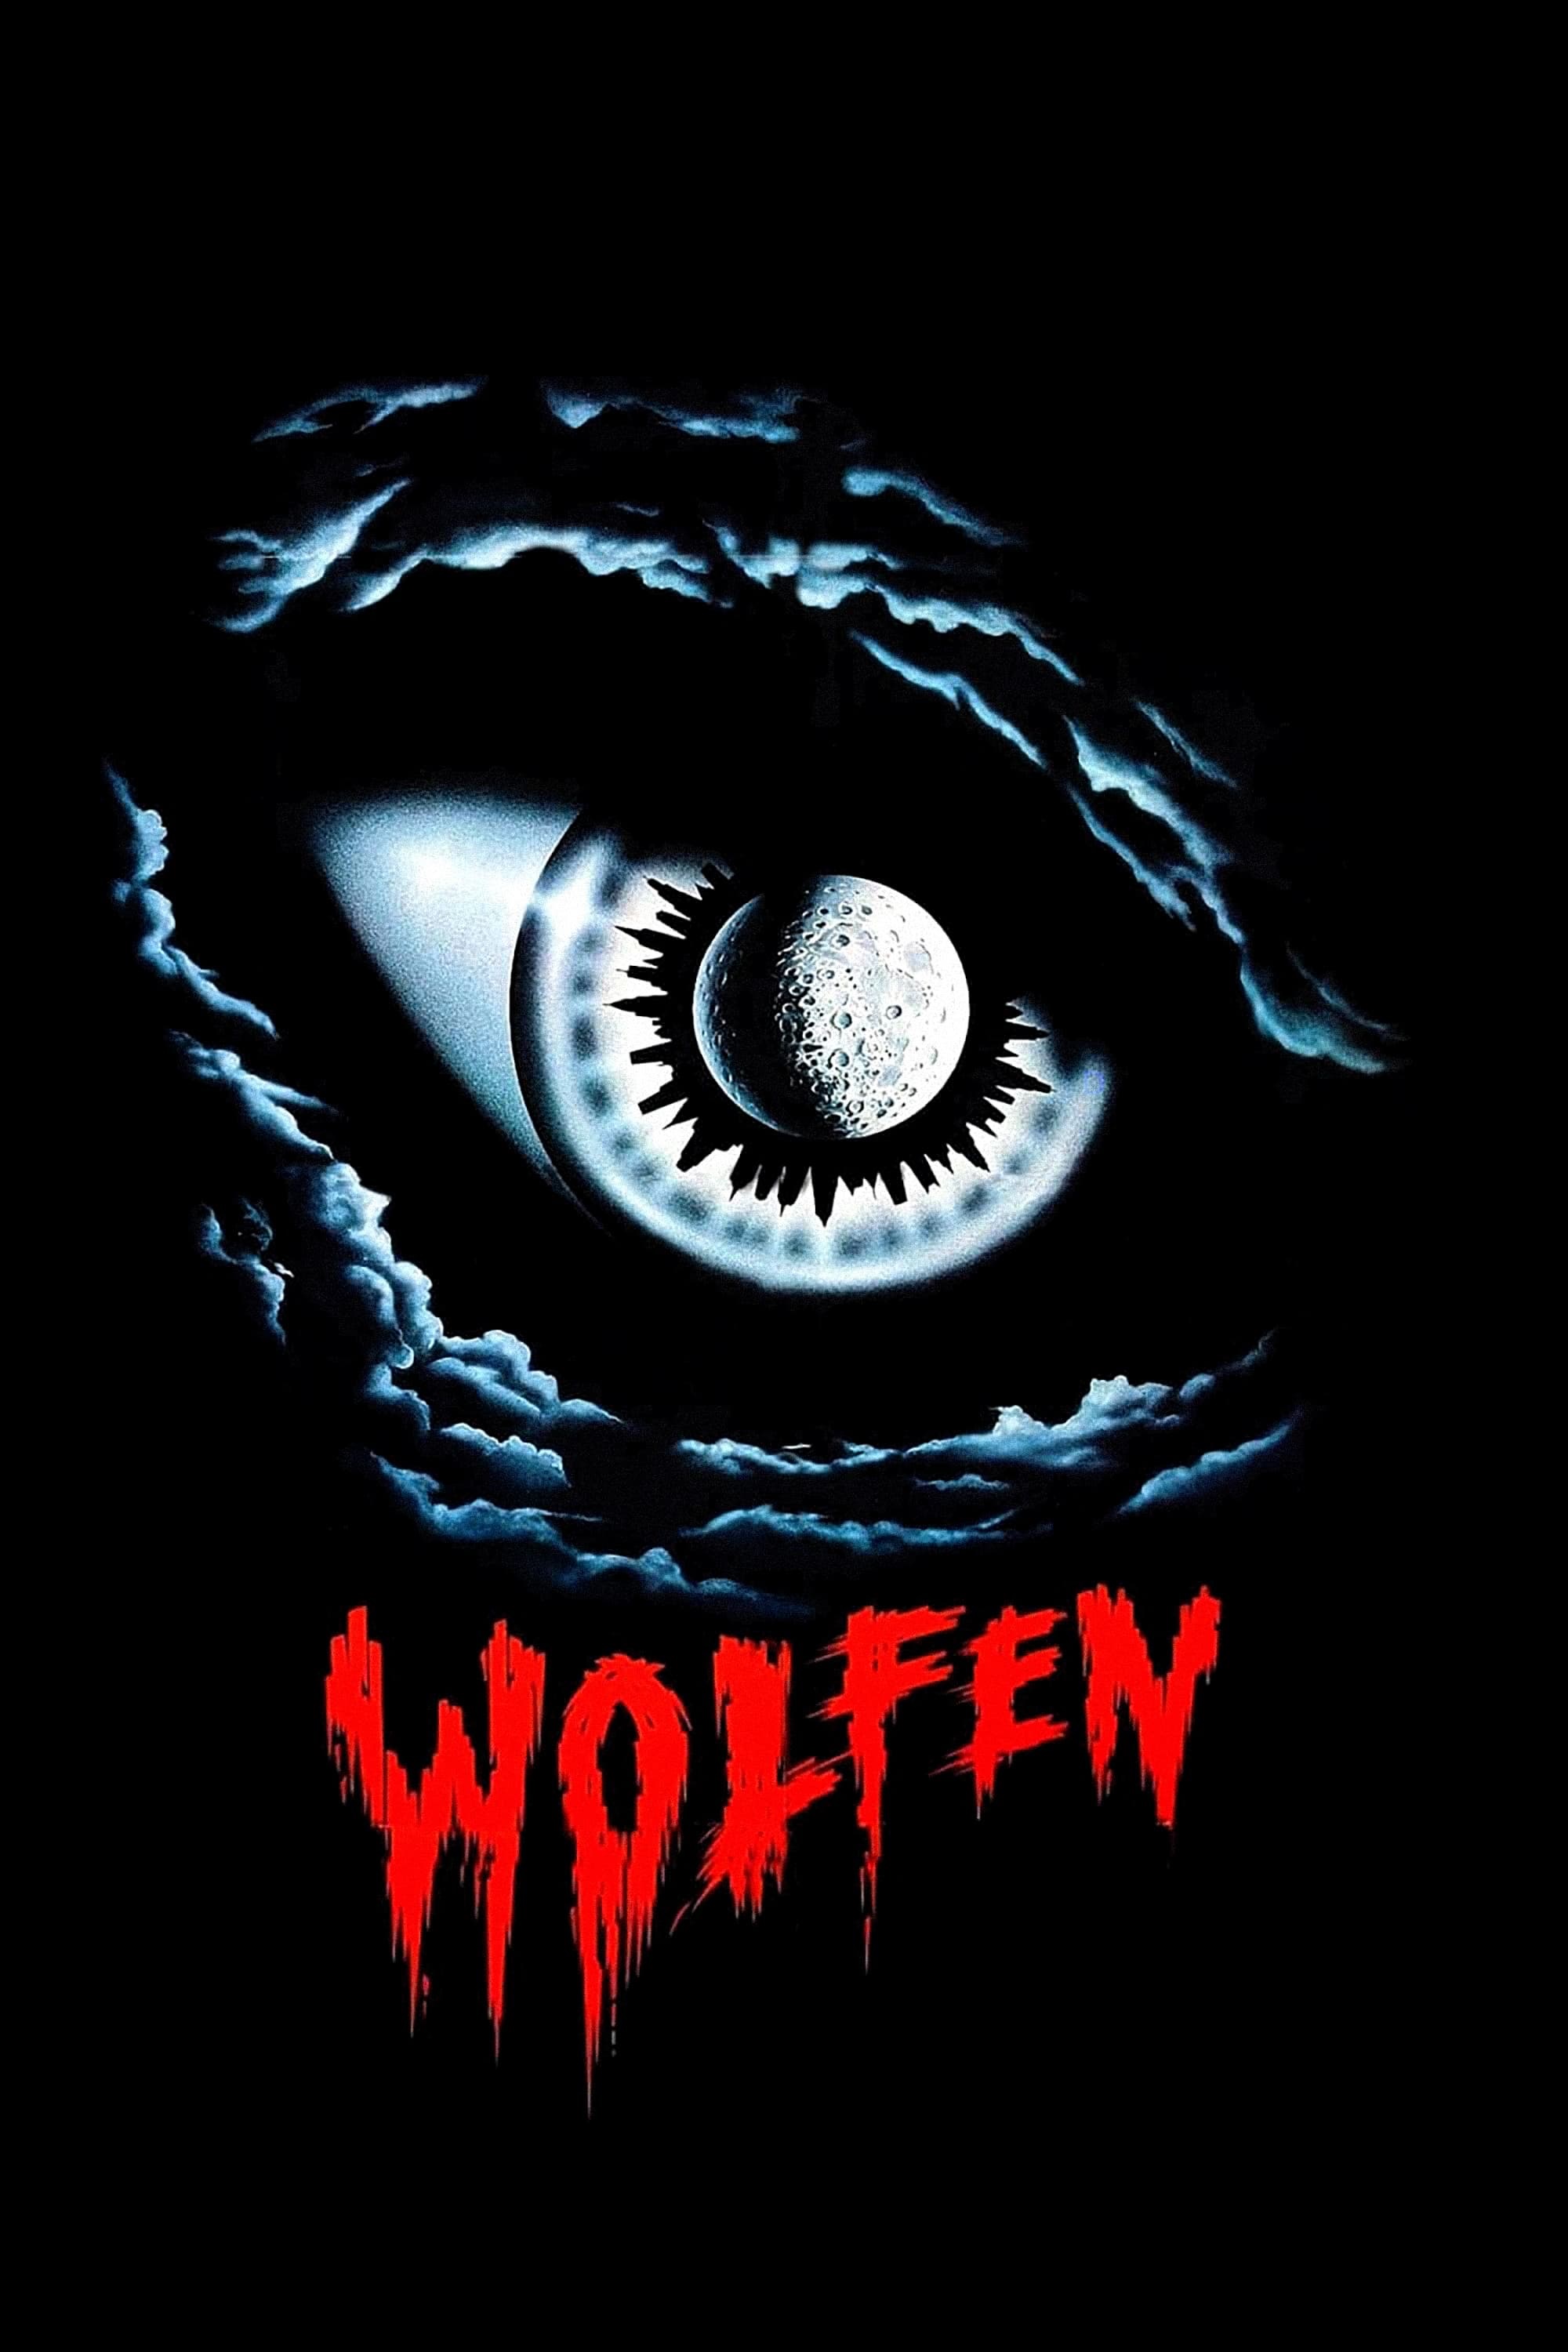 Wolfen (1981) 1080p DTS 5.1 x264